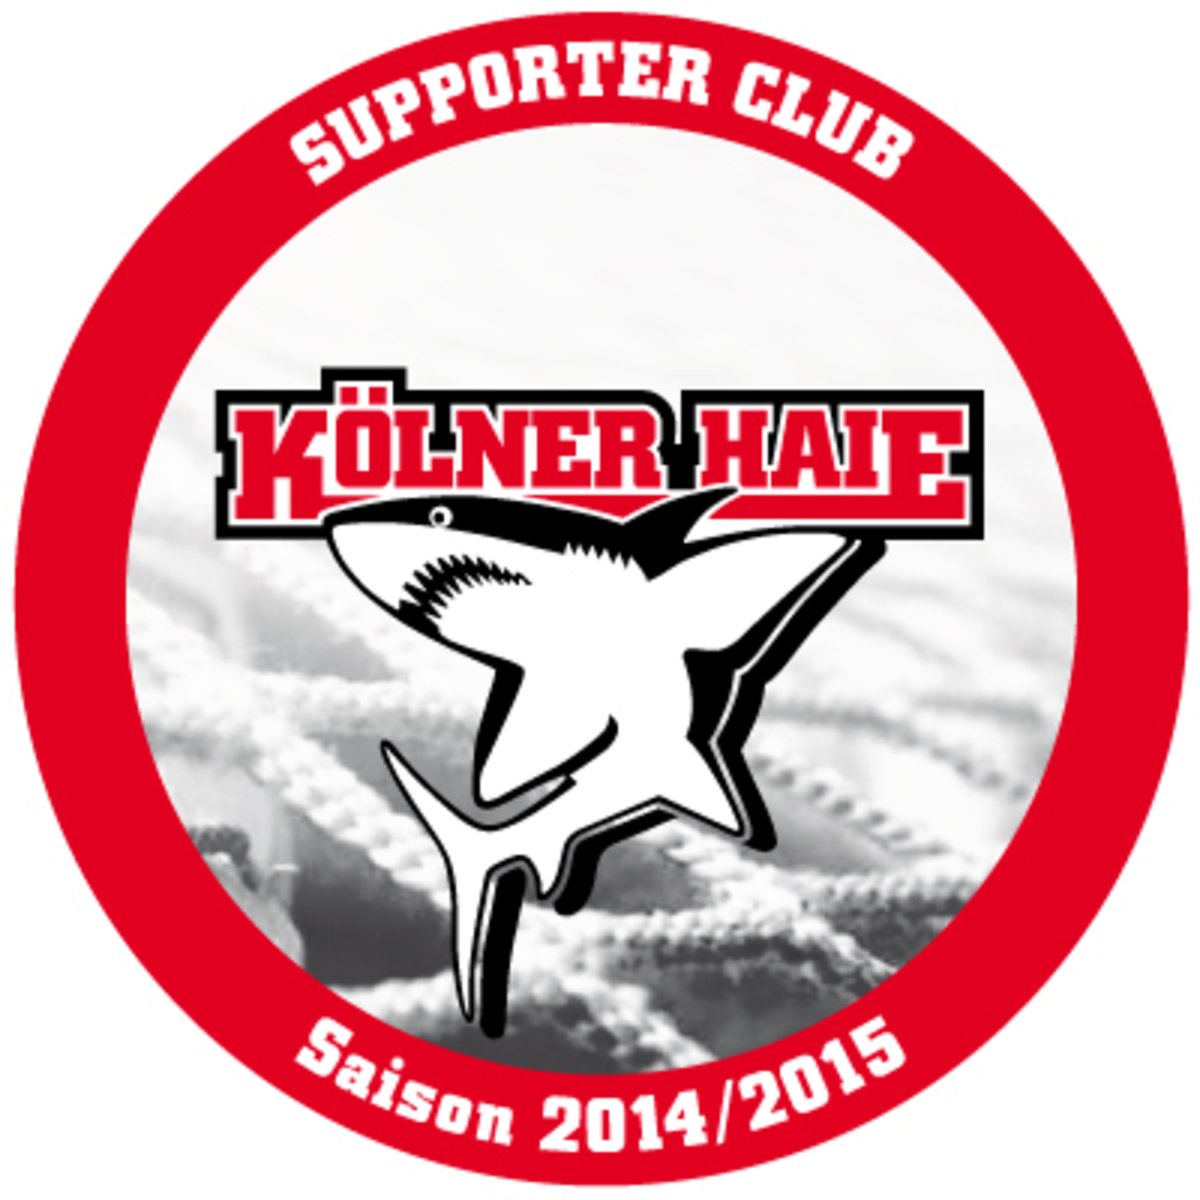 ALDAK als Supporter Club der Kölner Haie 2014/15